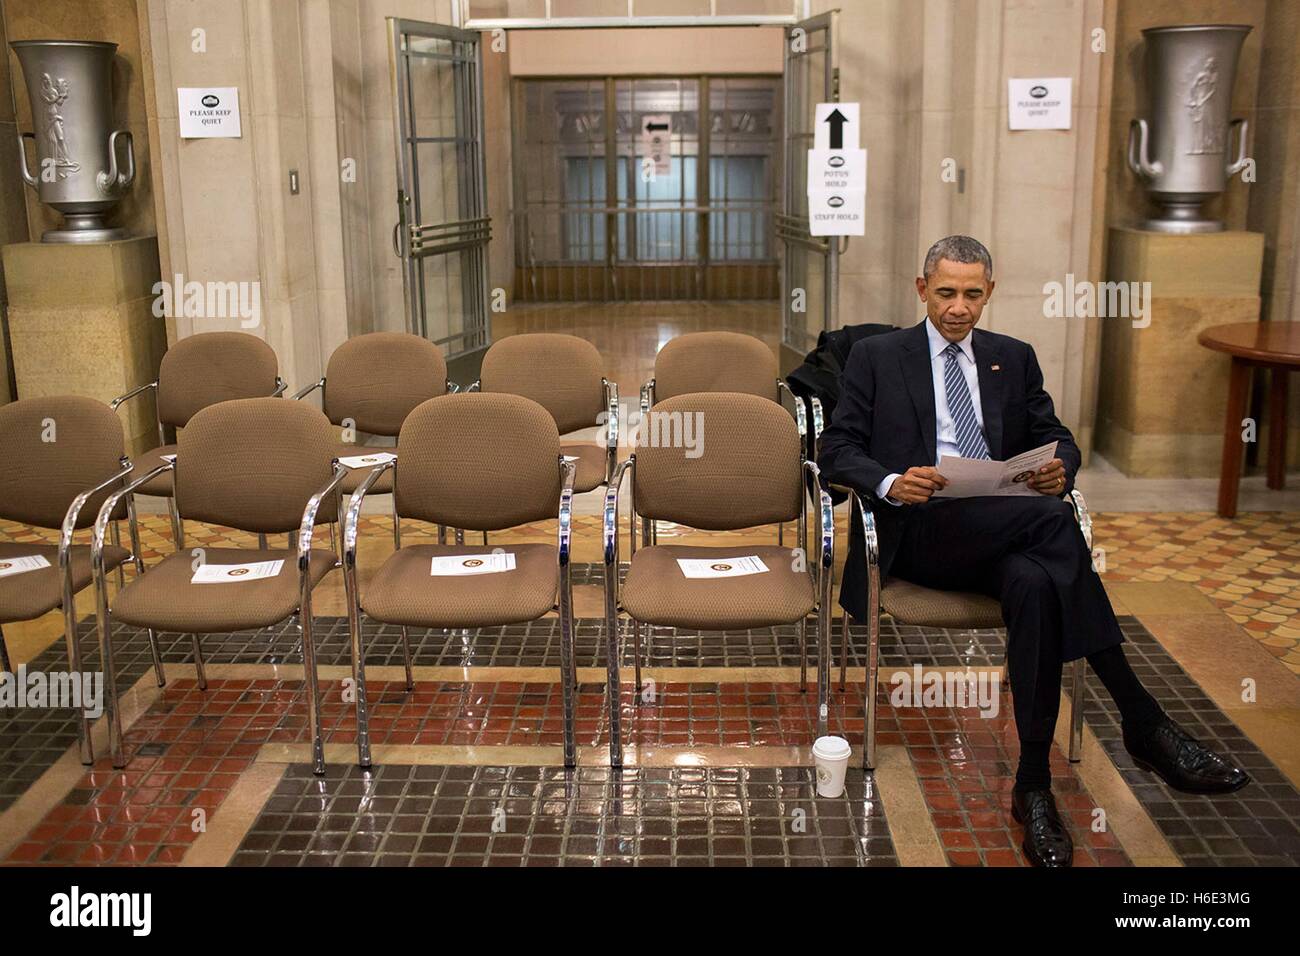 El presidente estadounidense Barack Obama lee un programa ante el retrato ceremonia para Fiscal General Eric Holder, Jr. del Departamento de Justicia de Estados Unidos el 27 de febrero de 2015 en Washington, DC. Foto de stock